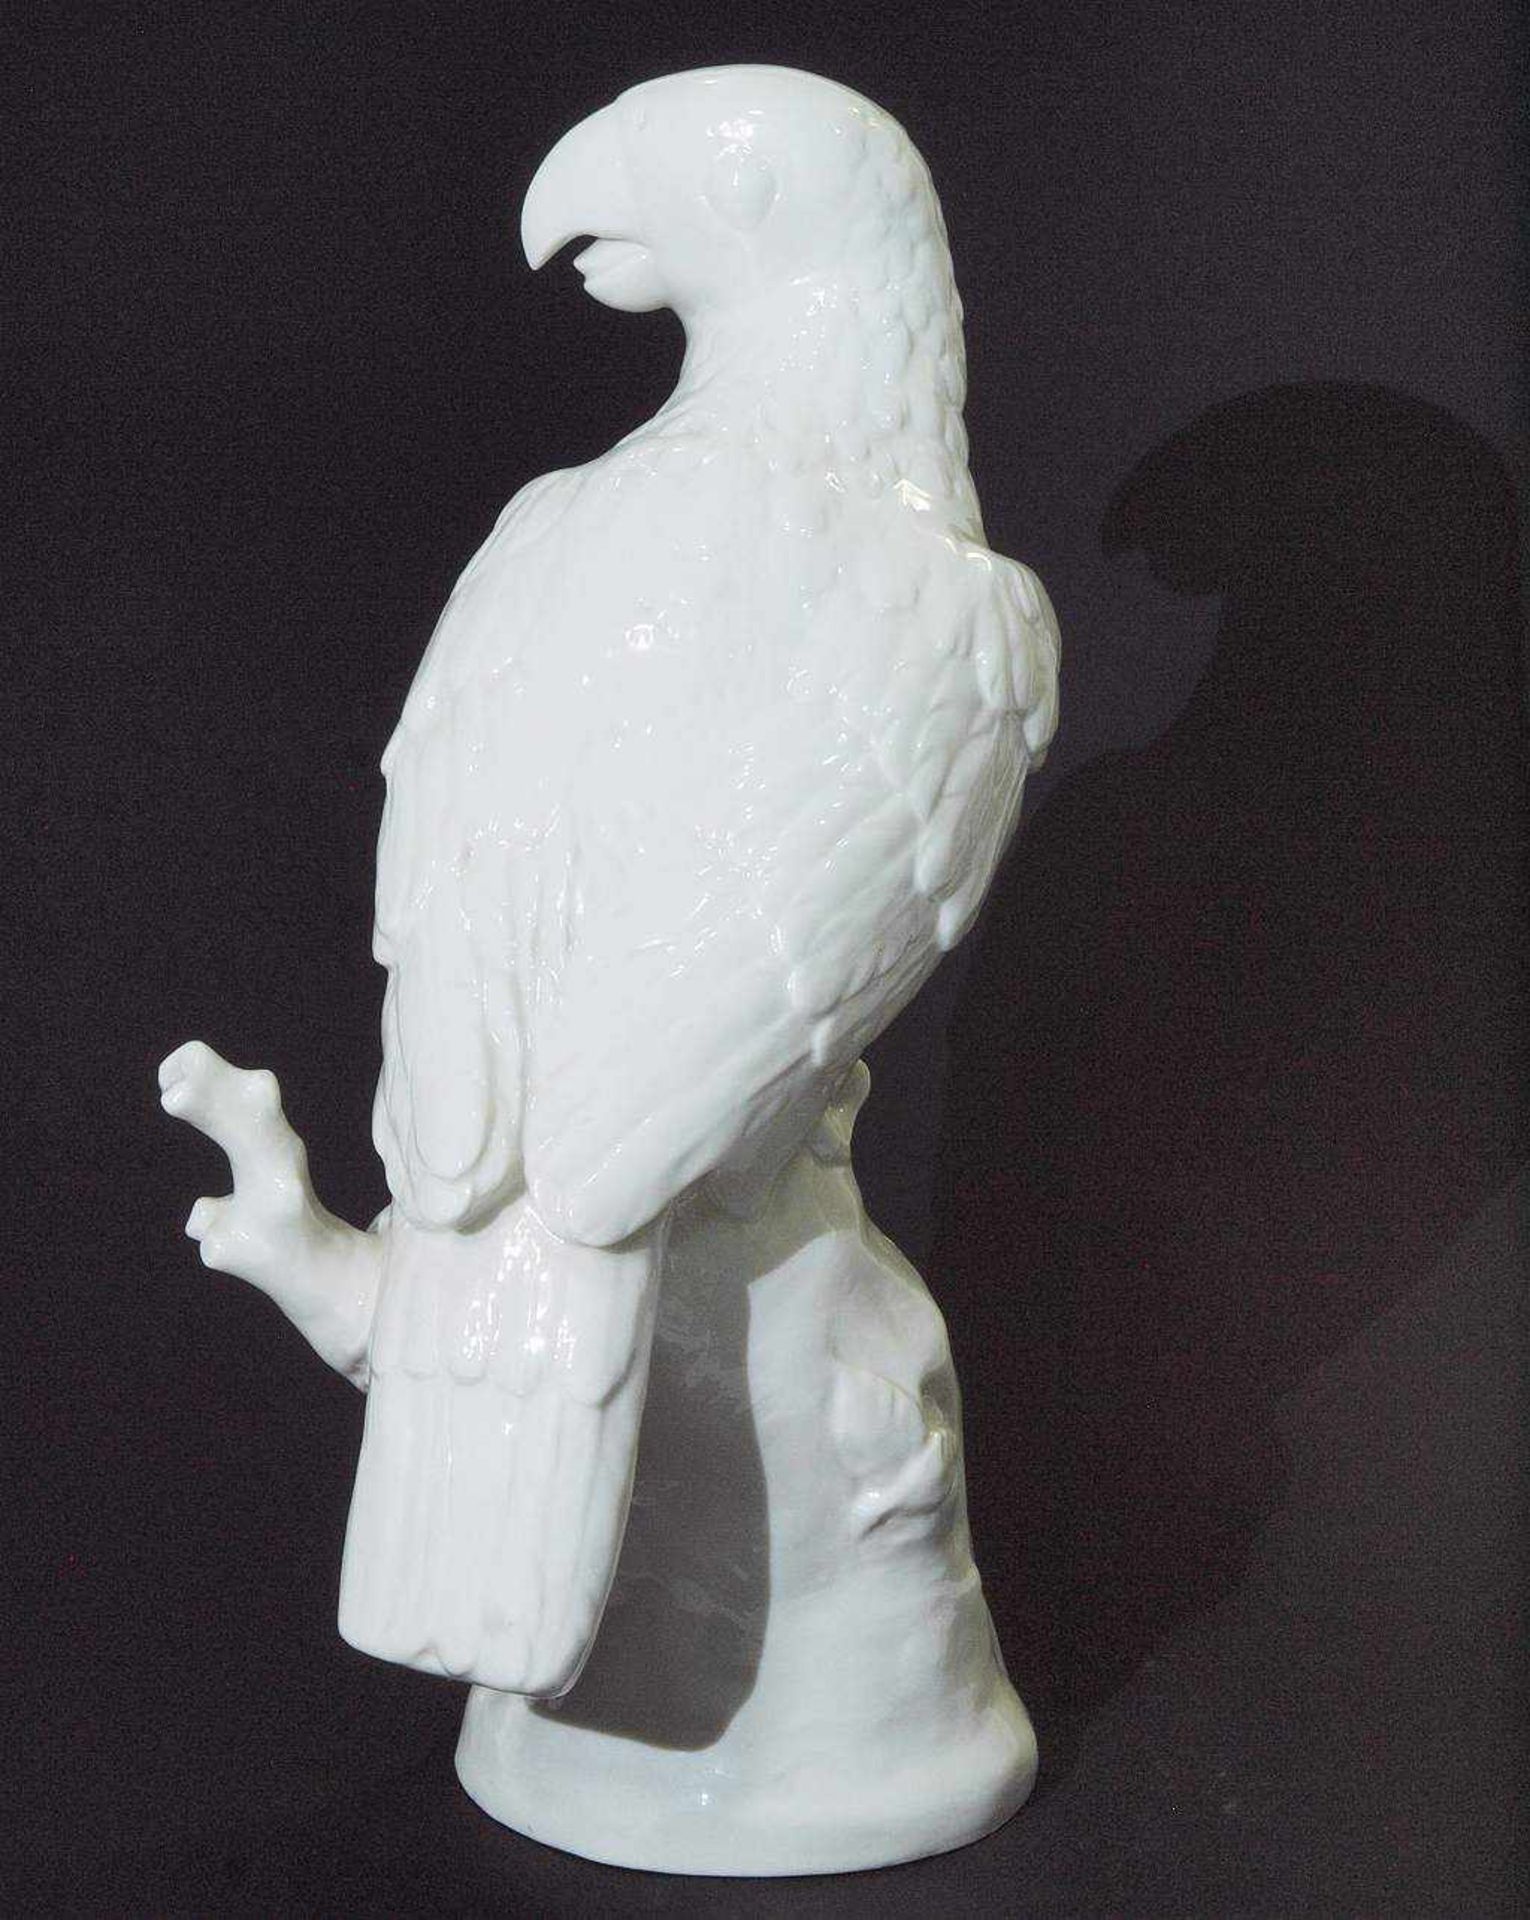 Papagei auf Natursockel. Papagei auf Natursockel. NYMPHENBURG Marke 1997. Modell Nr. 180. - Bild 3 aus 5